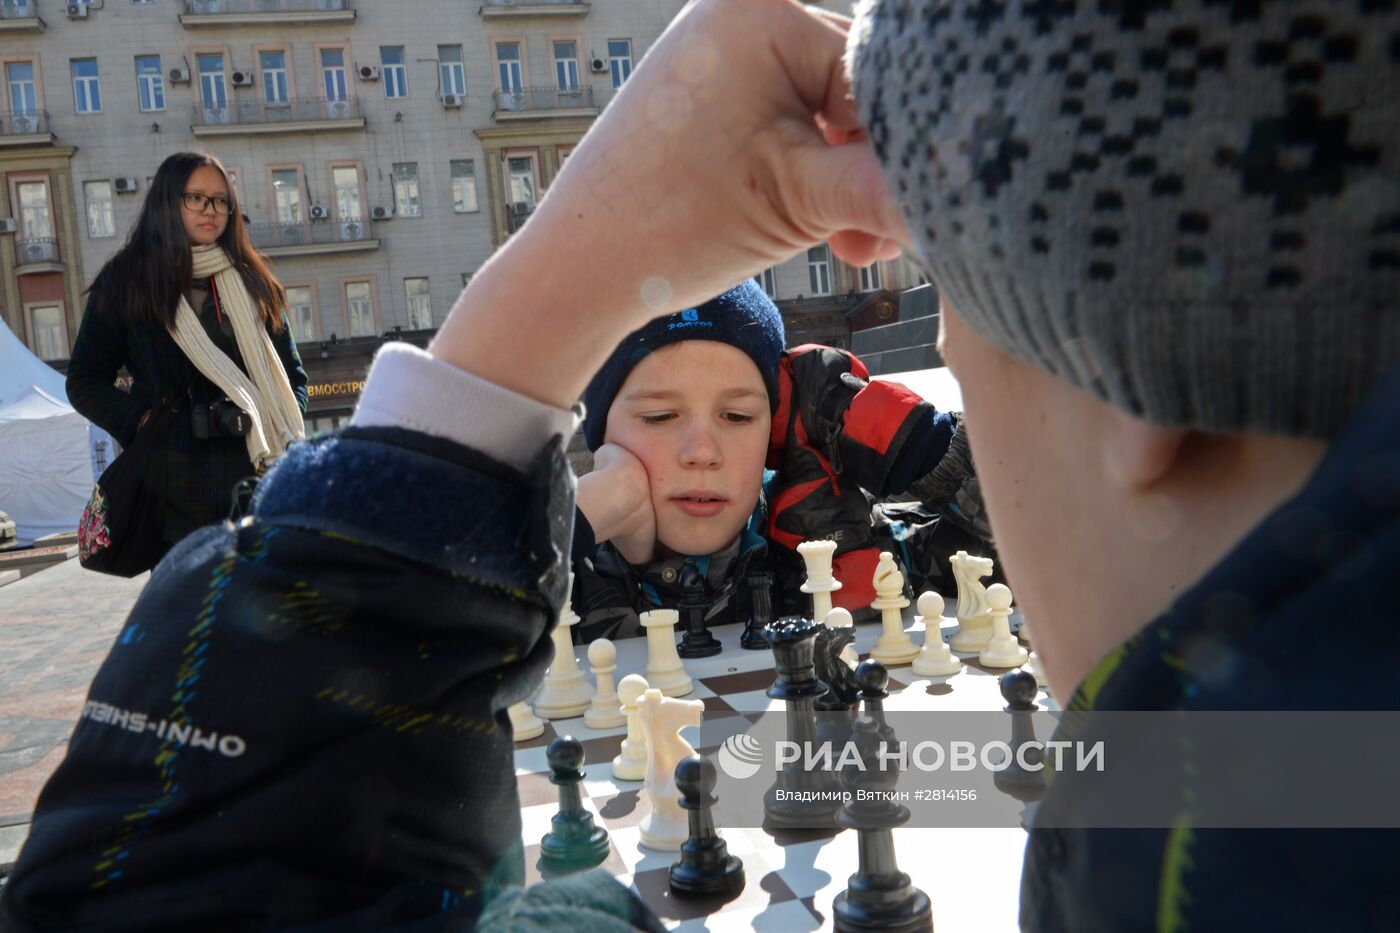 Шахматный фестиваль в Москве